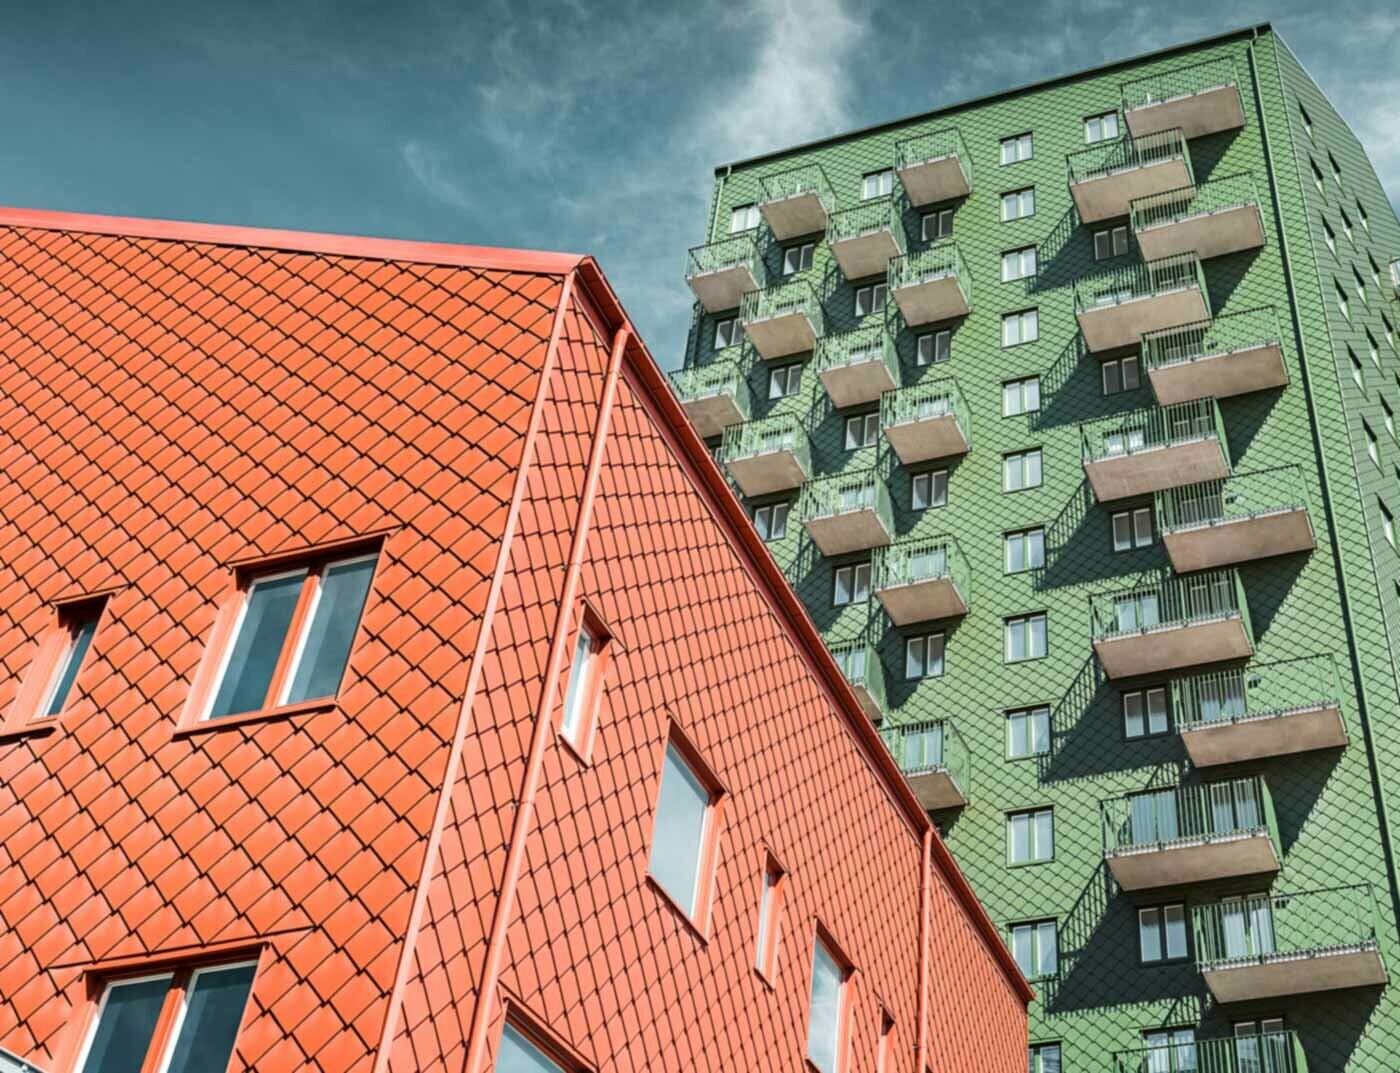 Case svedesi con balconi e losanga PREFA di colore verde e rosso cotto.